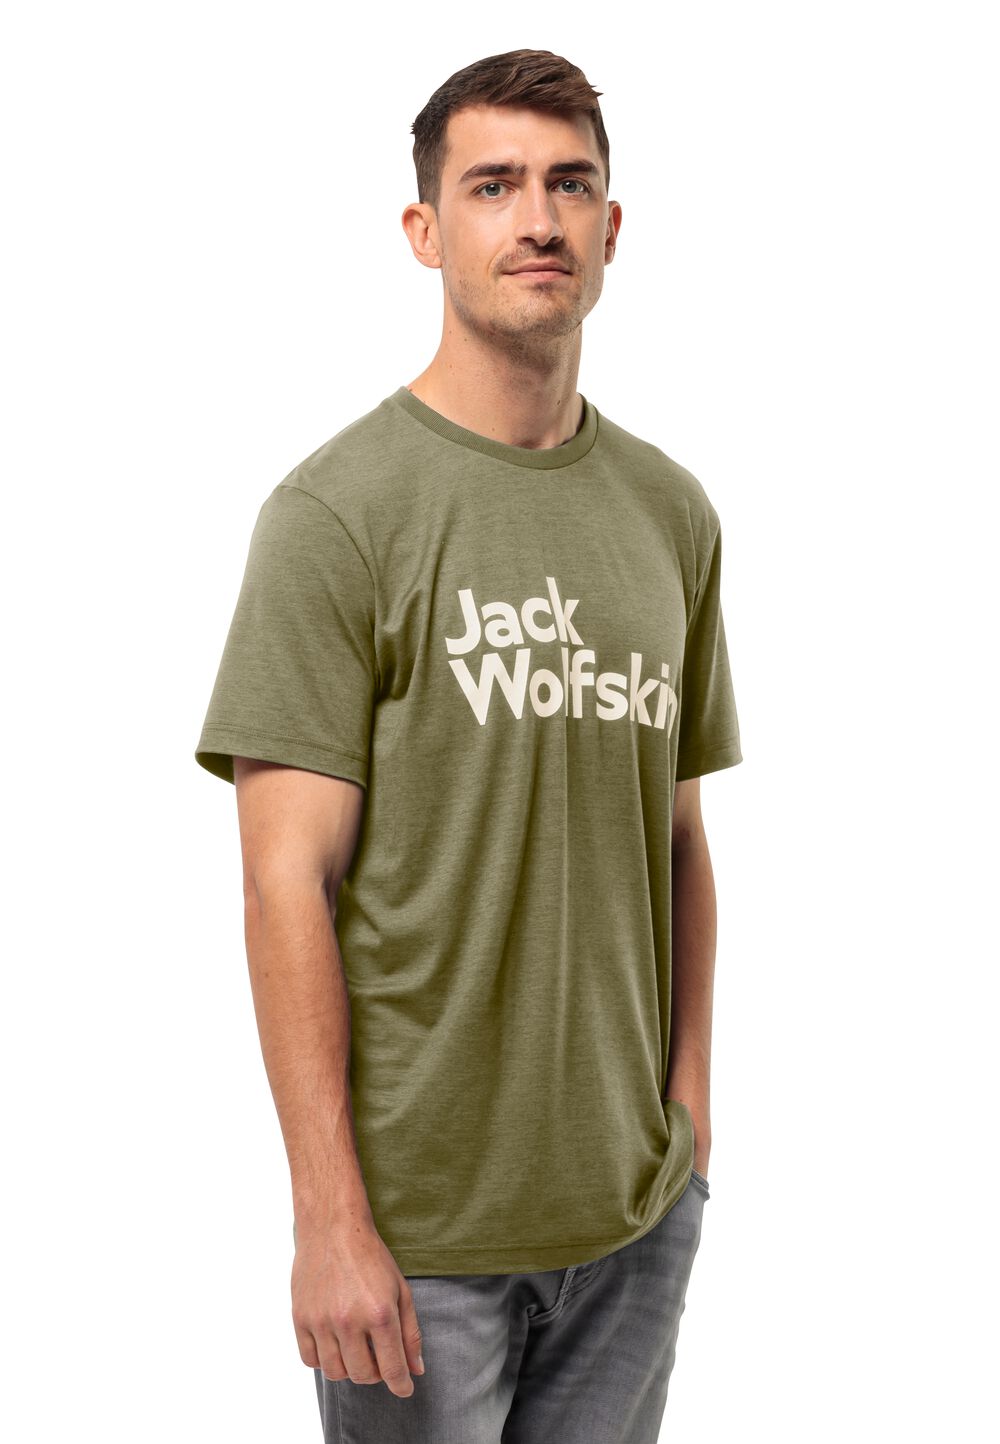 Jack Wolfskin Brand T-Shirt Men Functioneel shirt Heren XXL bruin bay leaf